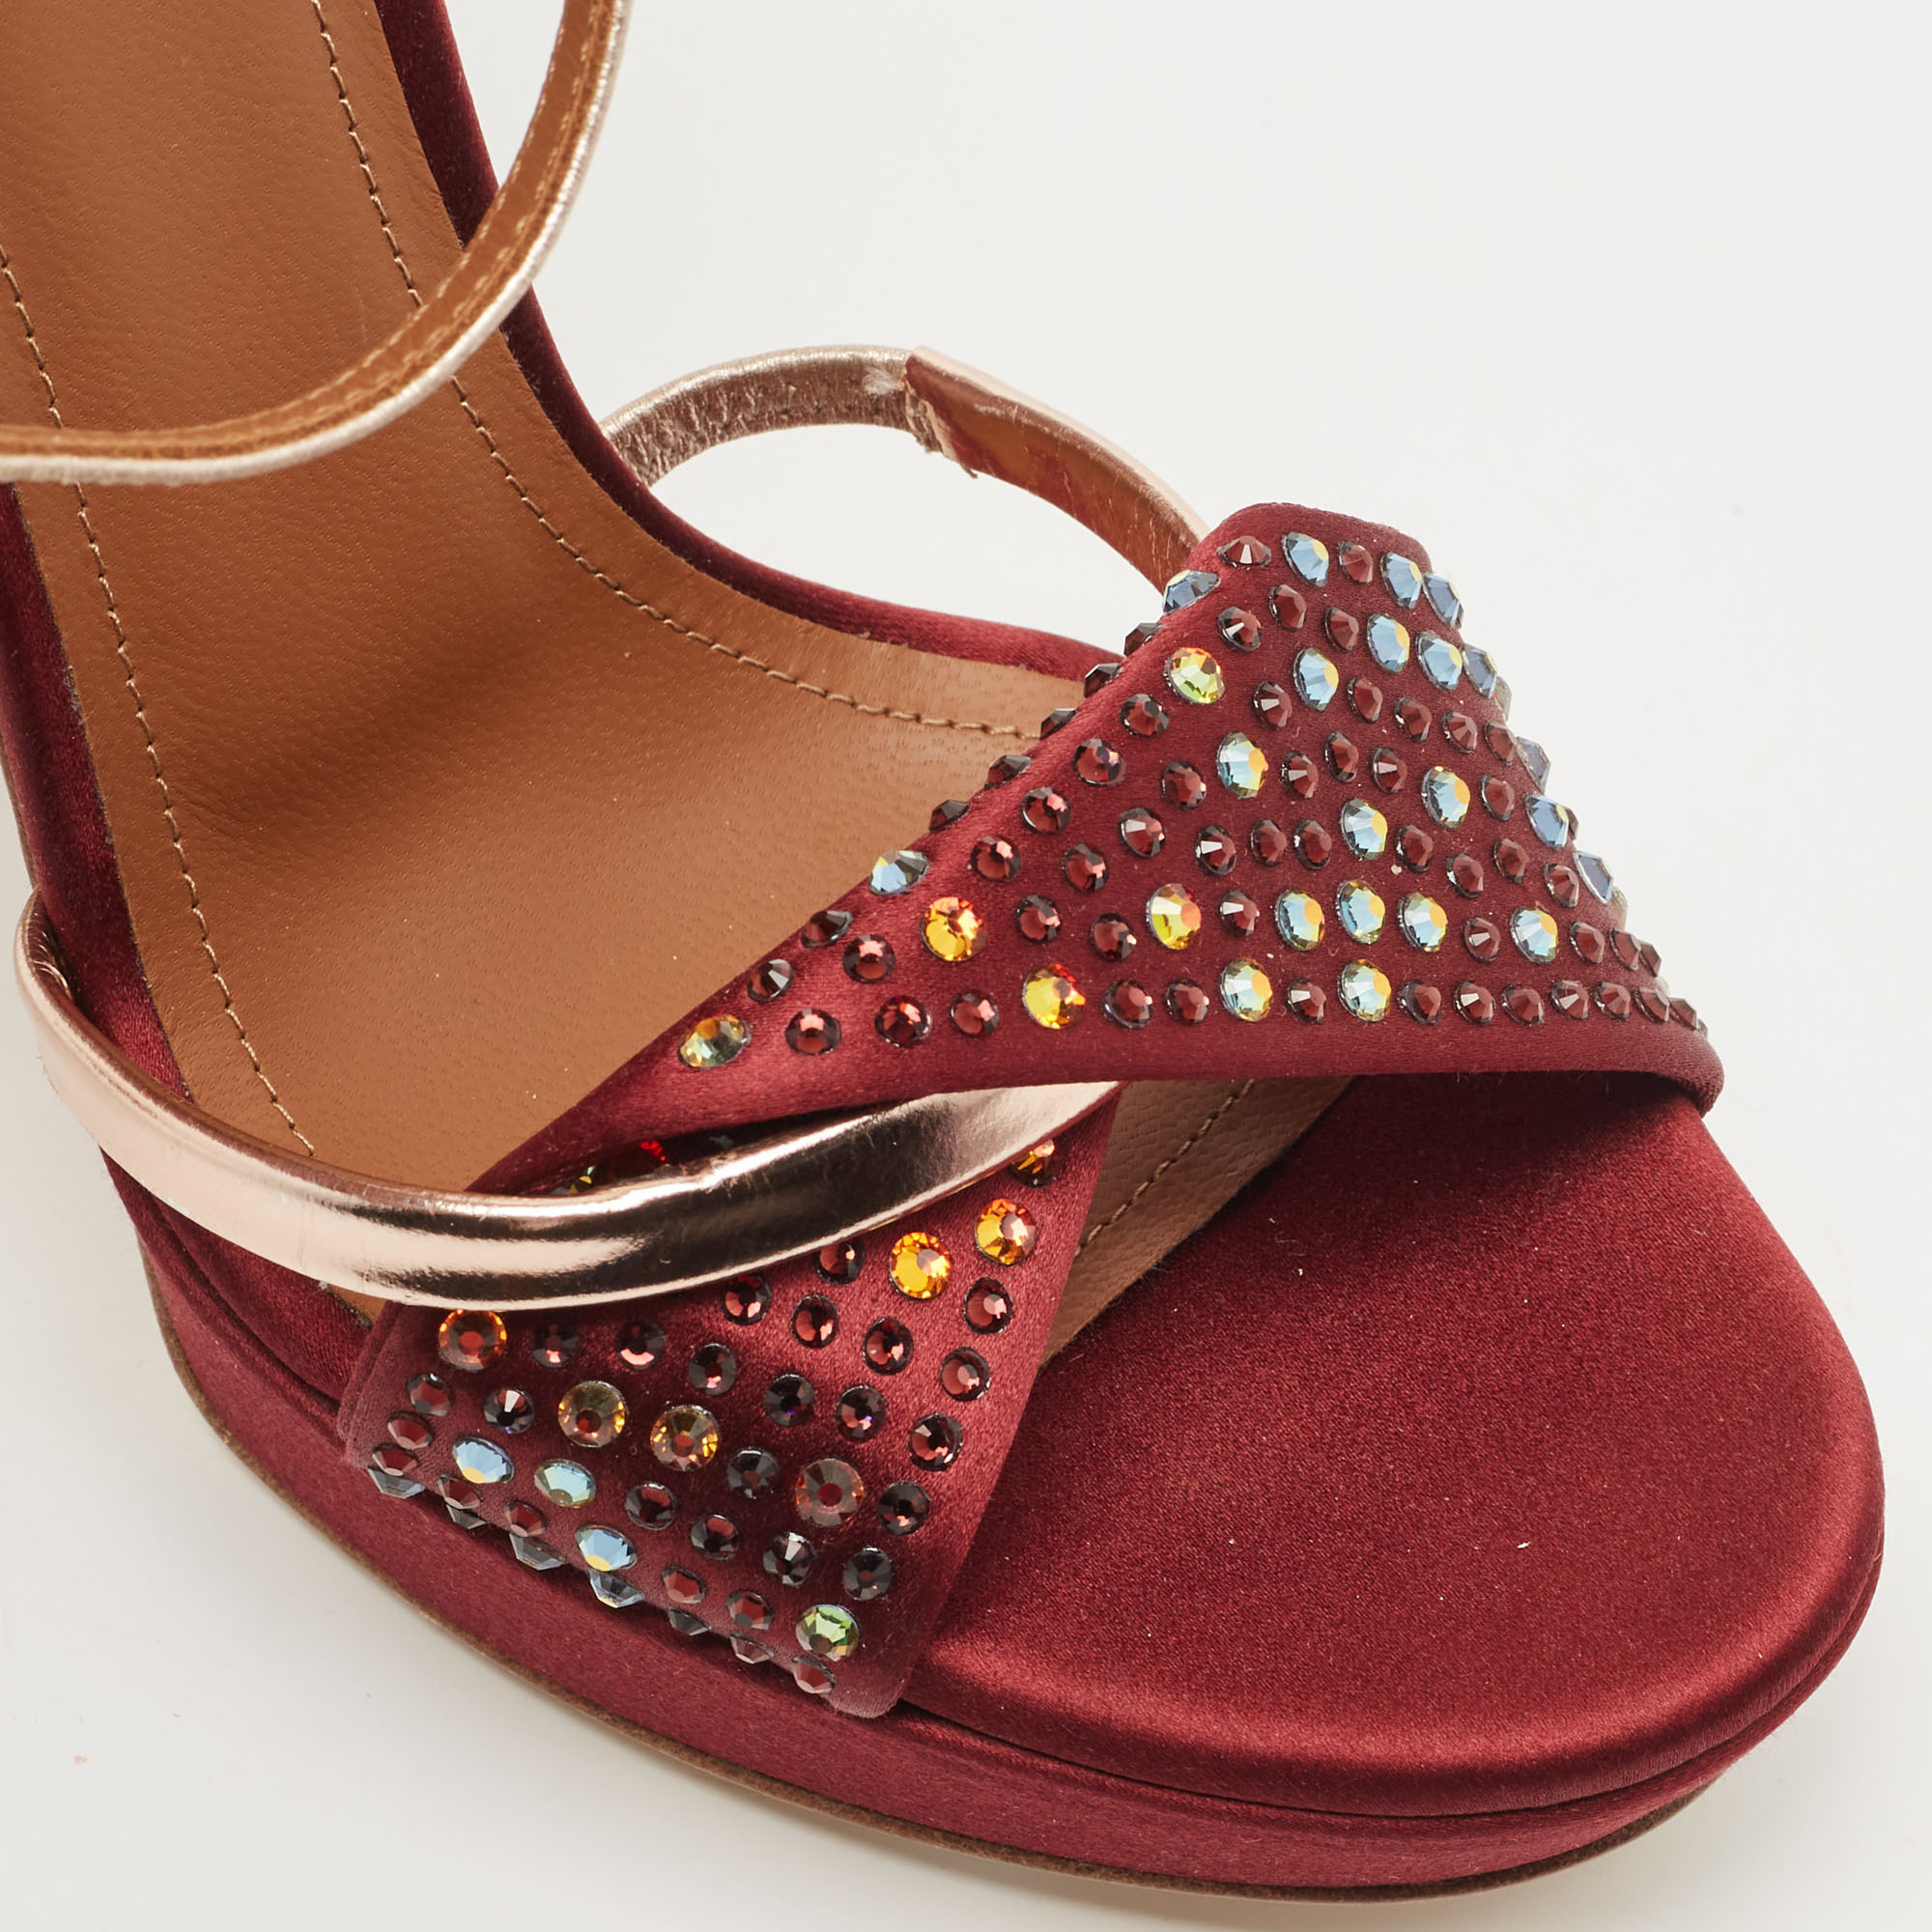 Malone Souliers Burgundy Satin Embellished Platform Sandals Size 37.5